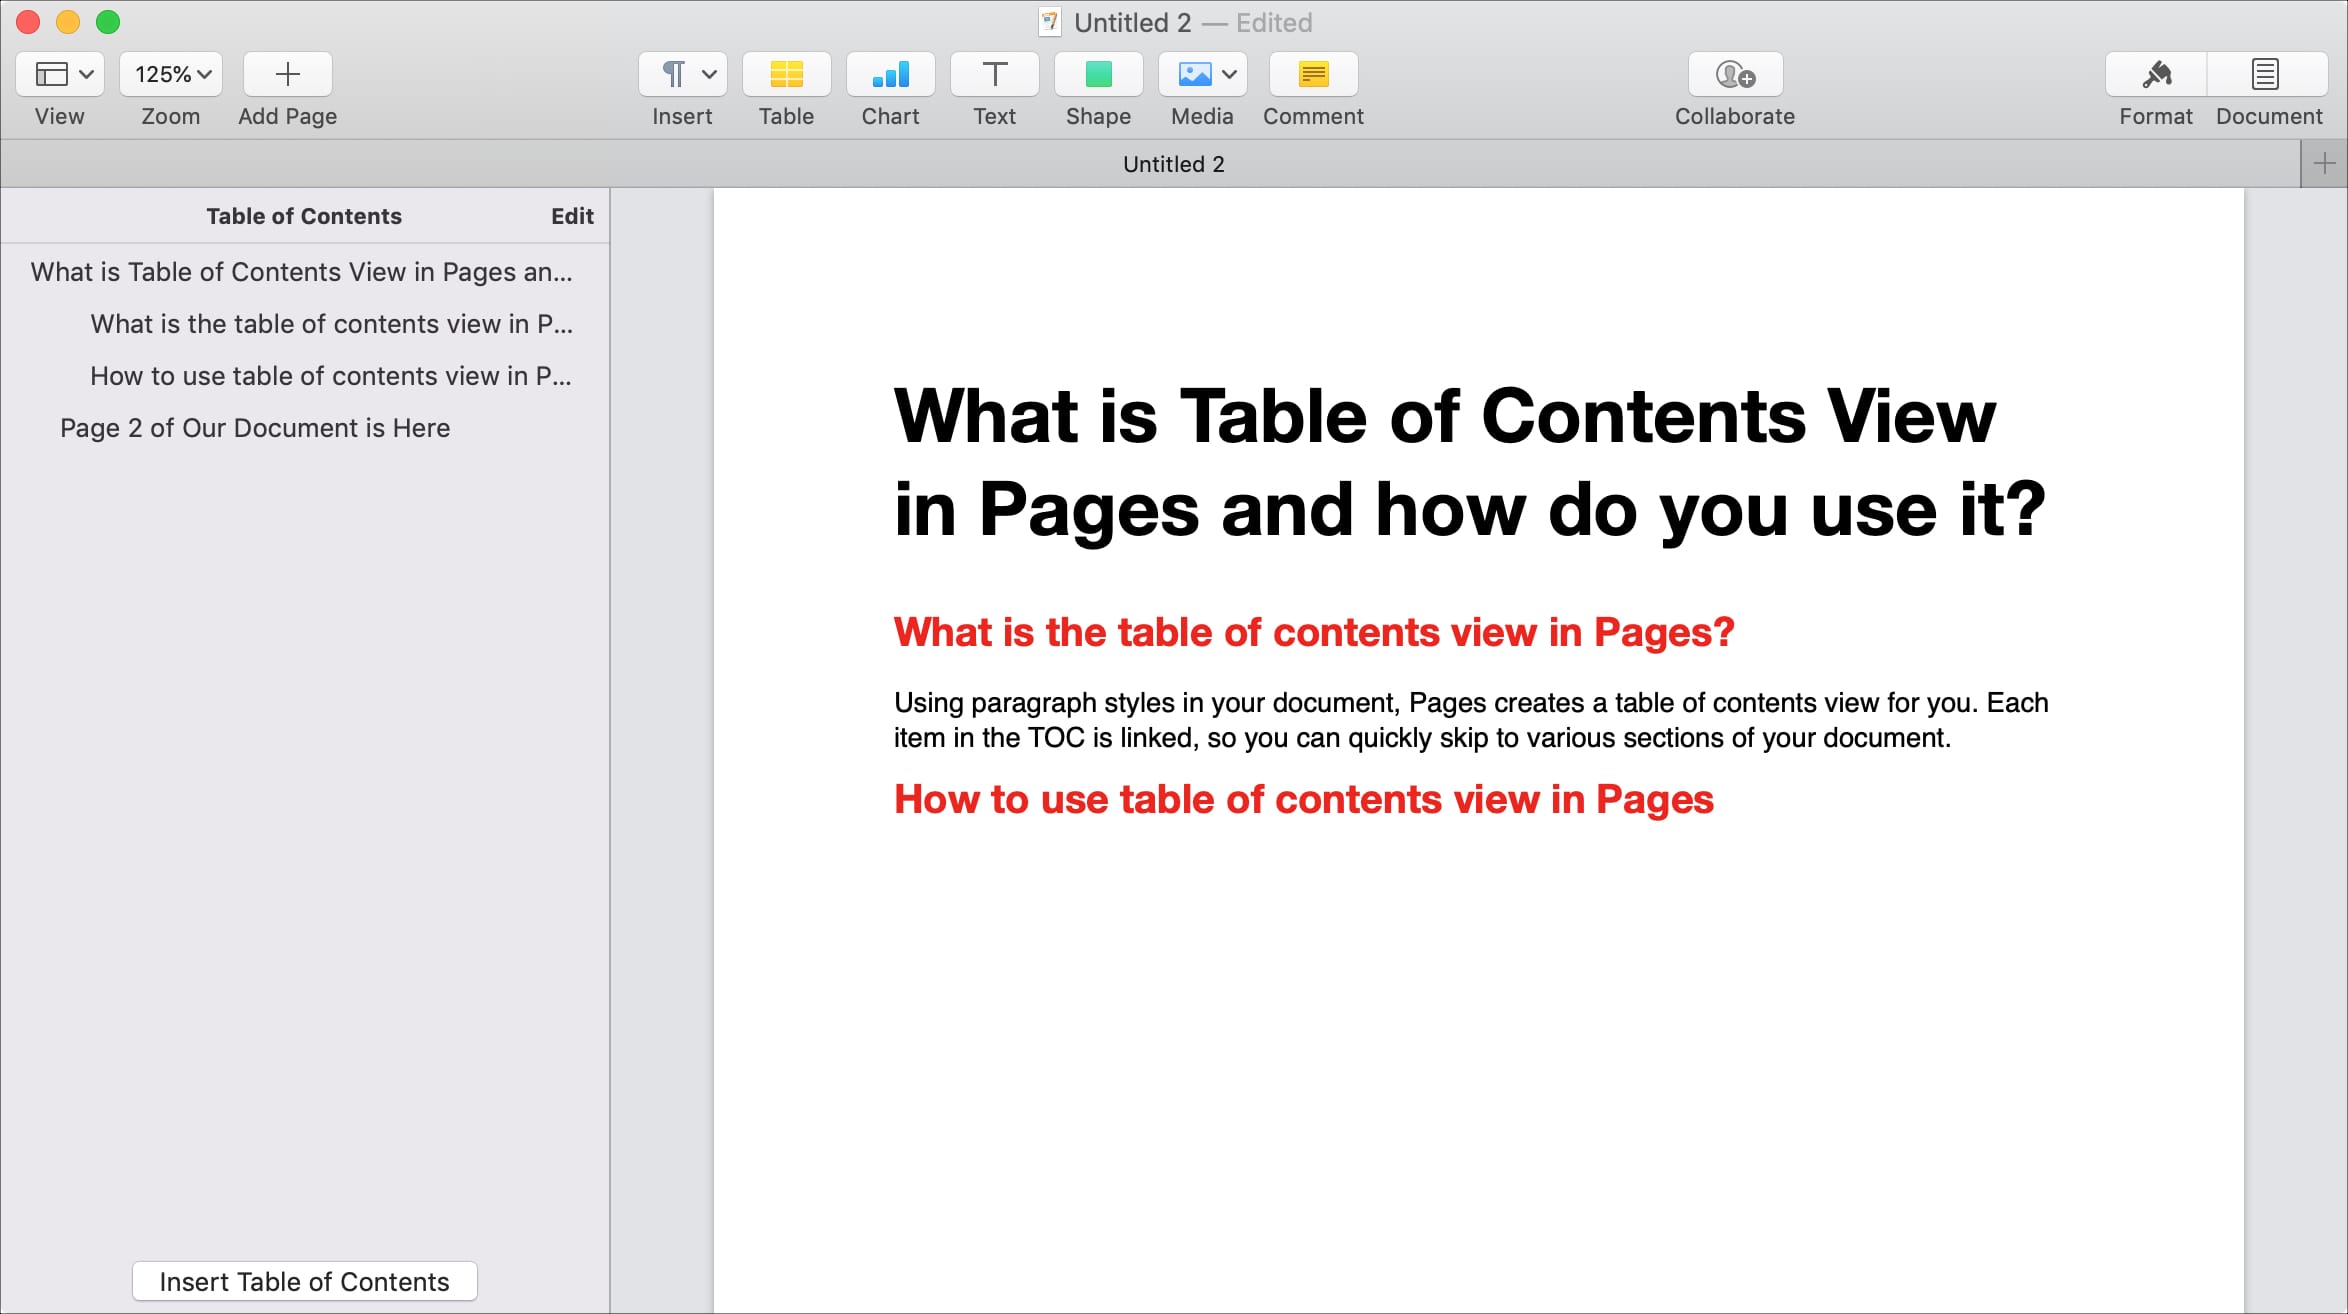 ¿Qué es la vista de tabla de contenido en las páginas y cómo se usa?